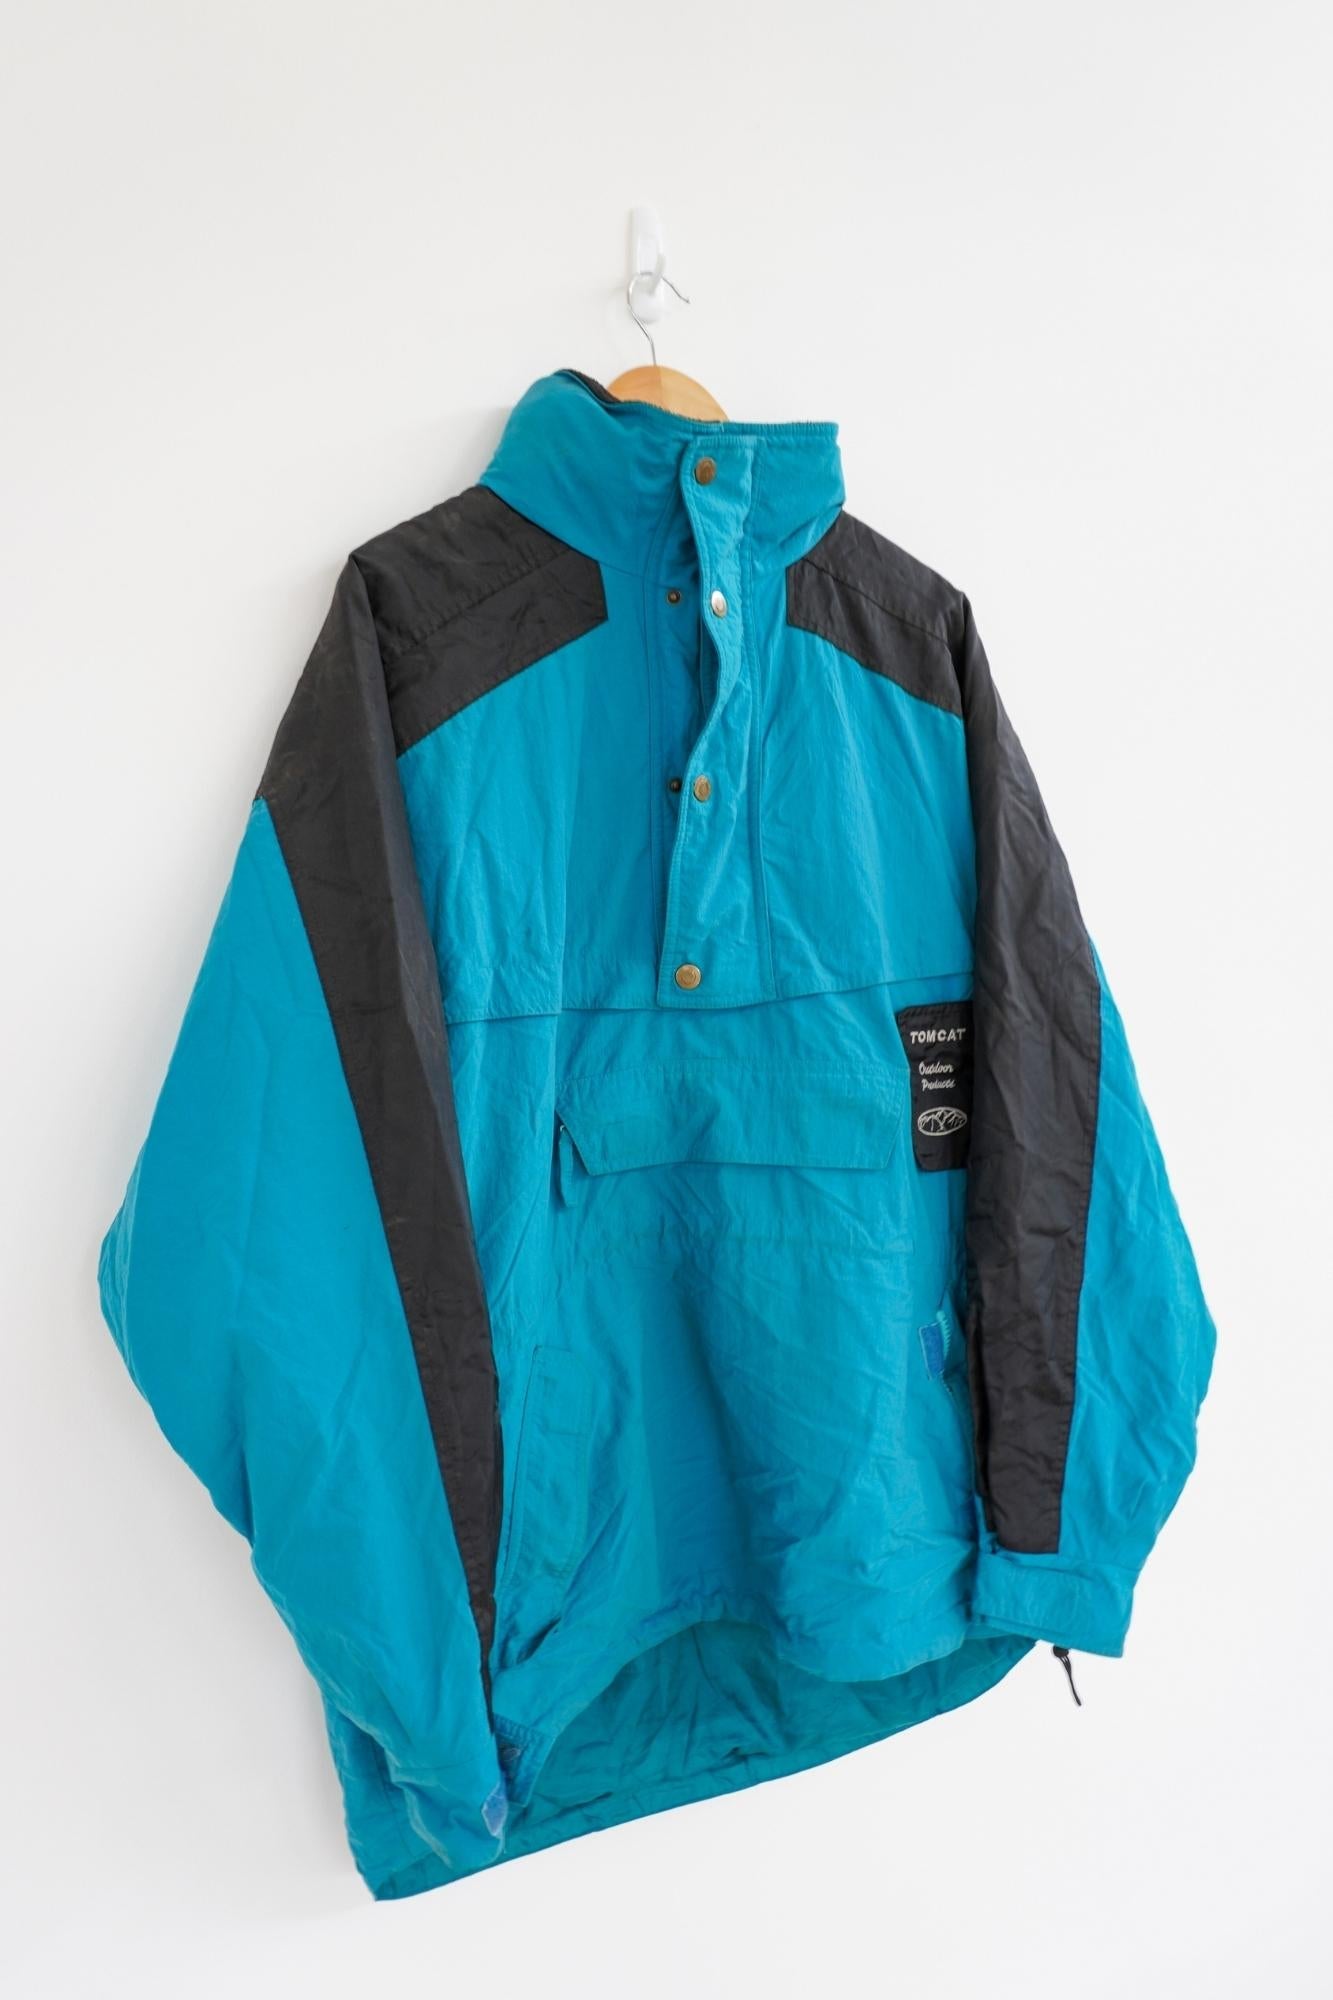 Tomcat Blue Vintage Ski Jacket